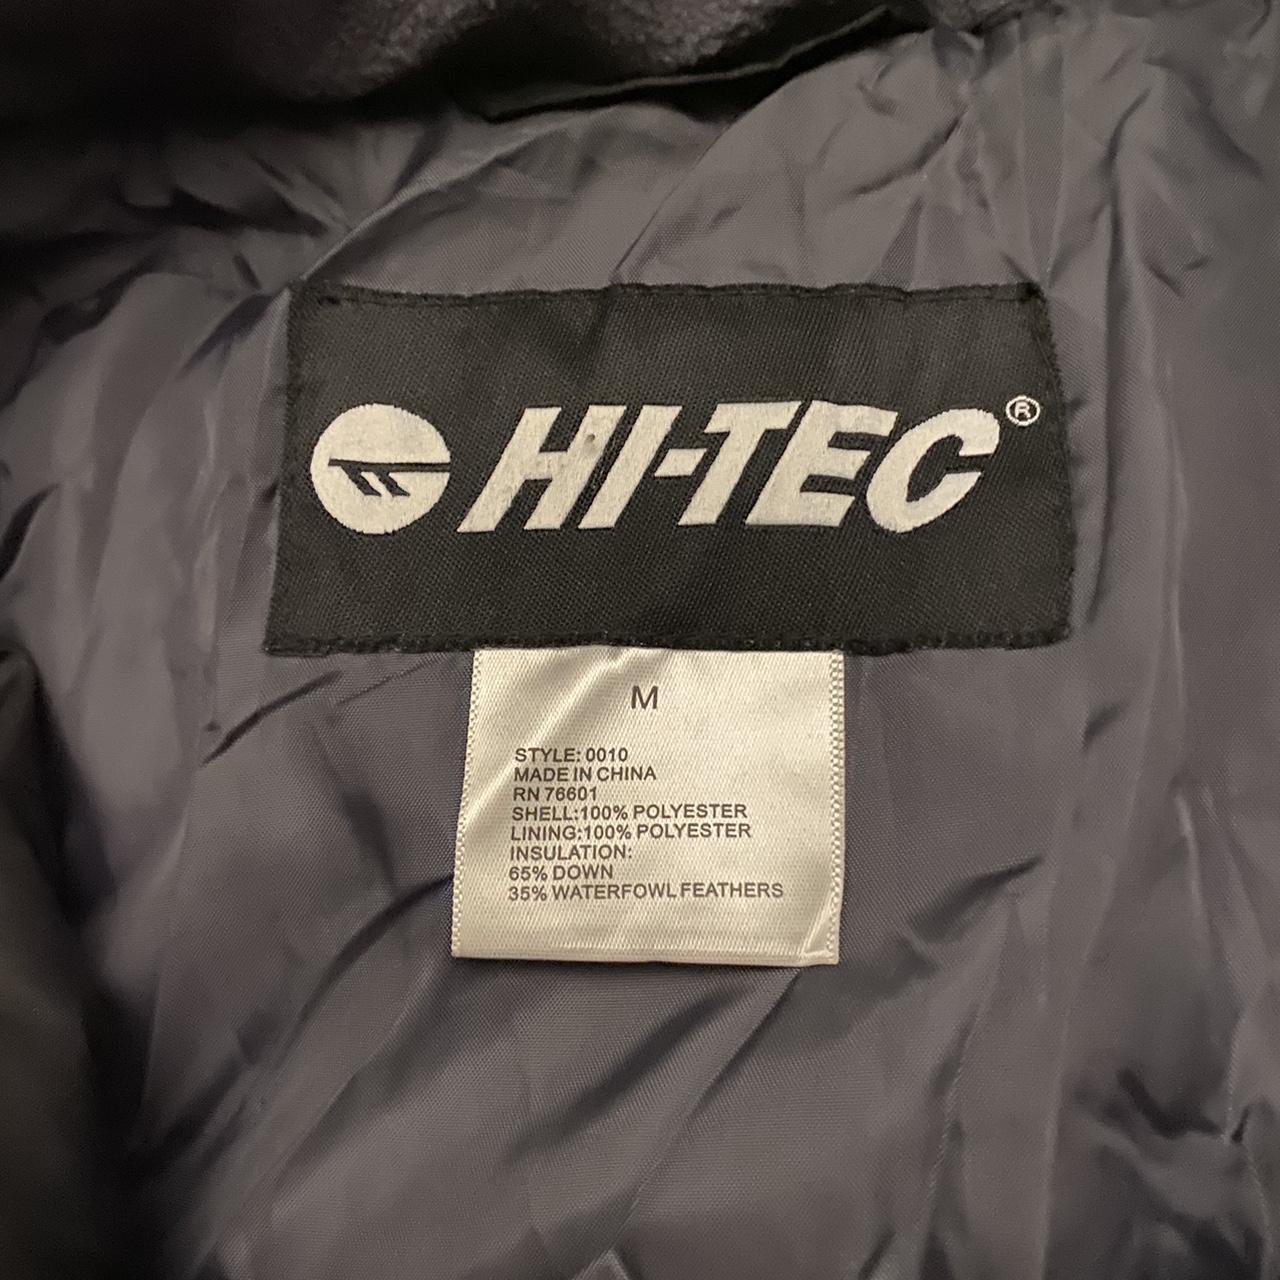 Hi-Tech Puffer Jacket Size medium. Brand new never... - Depop